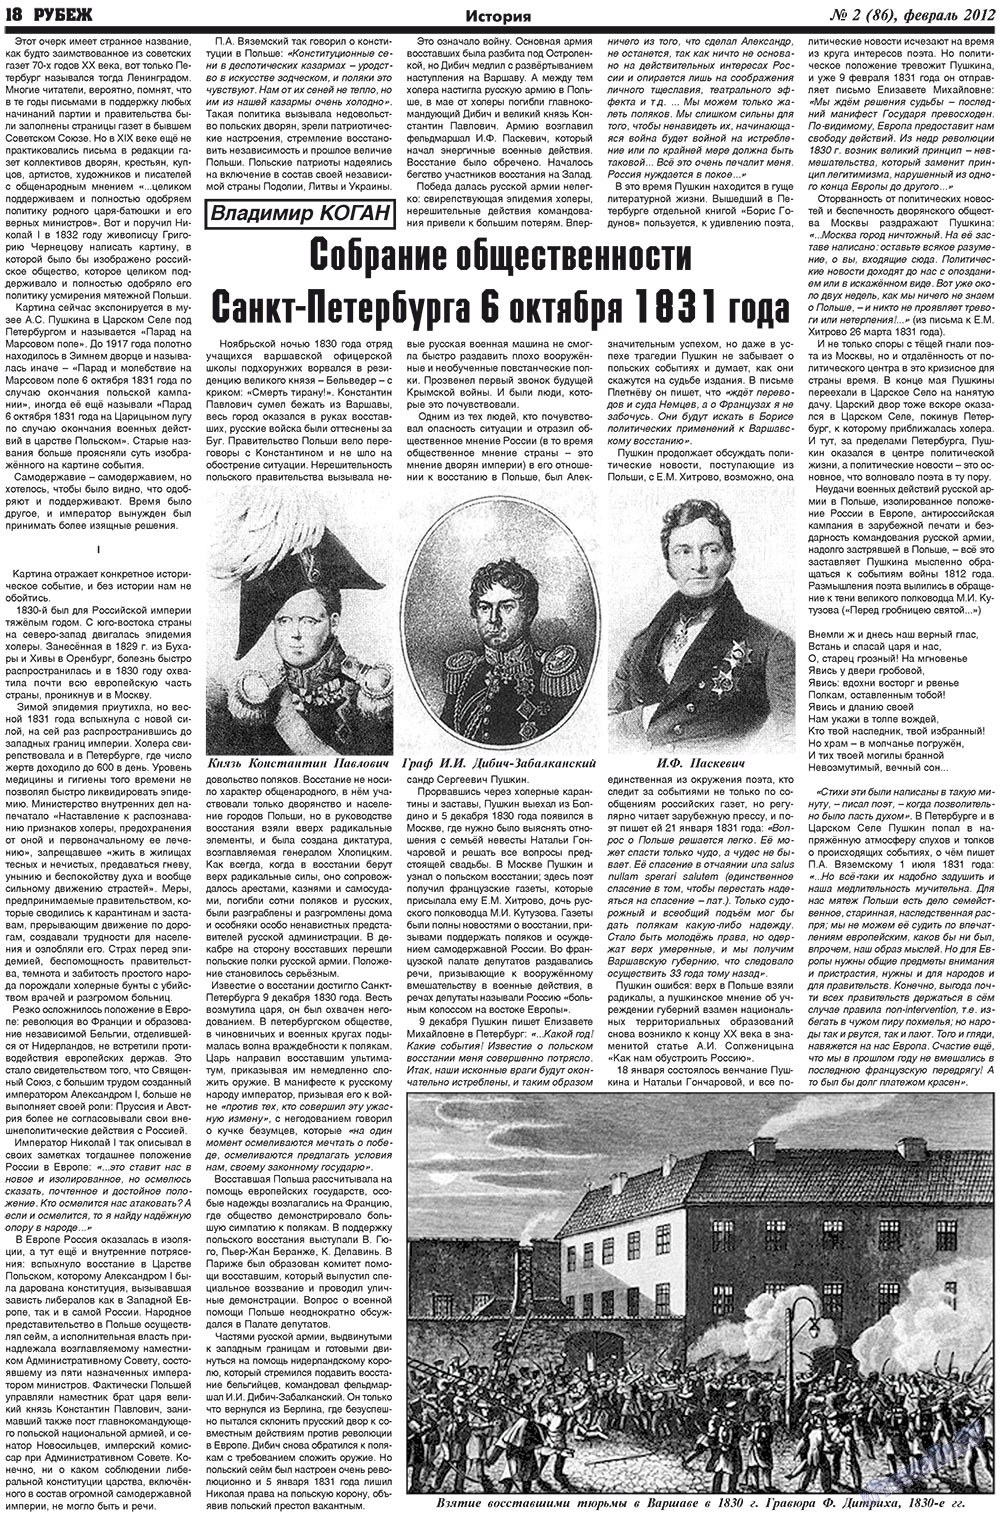 Рубеж (газета). 2012 год, номер 2, стр. 18